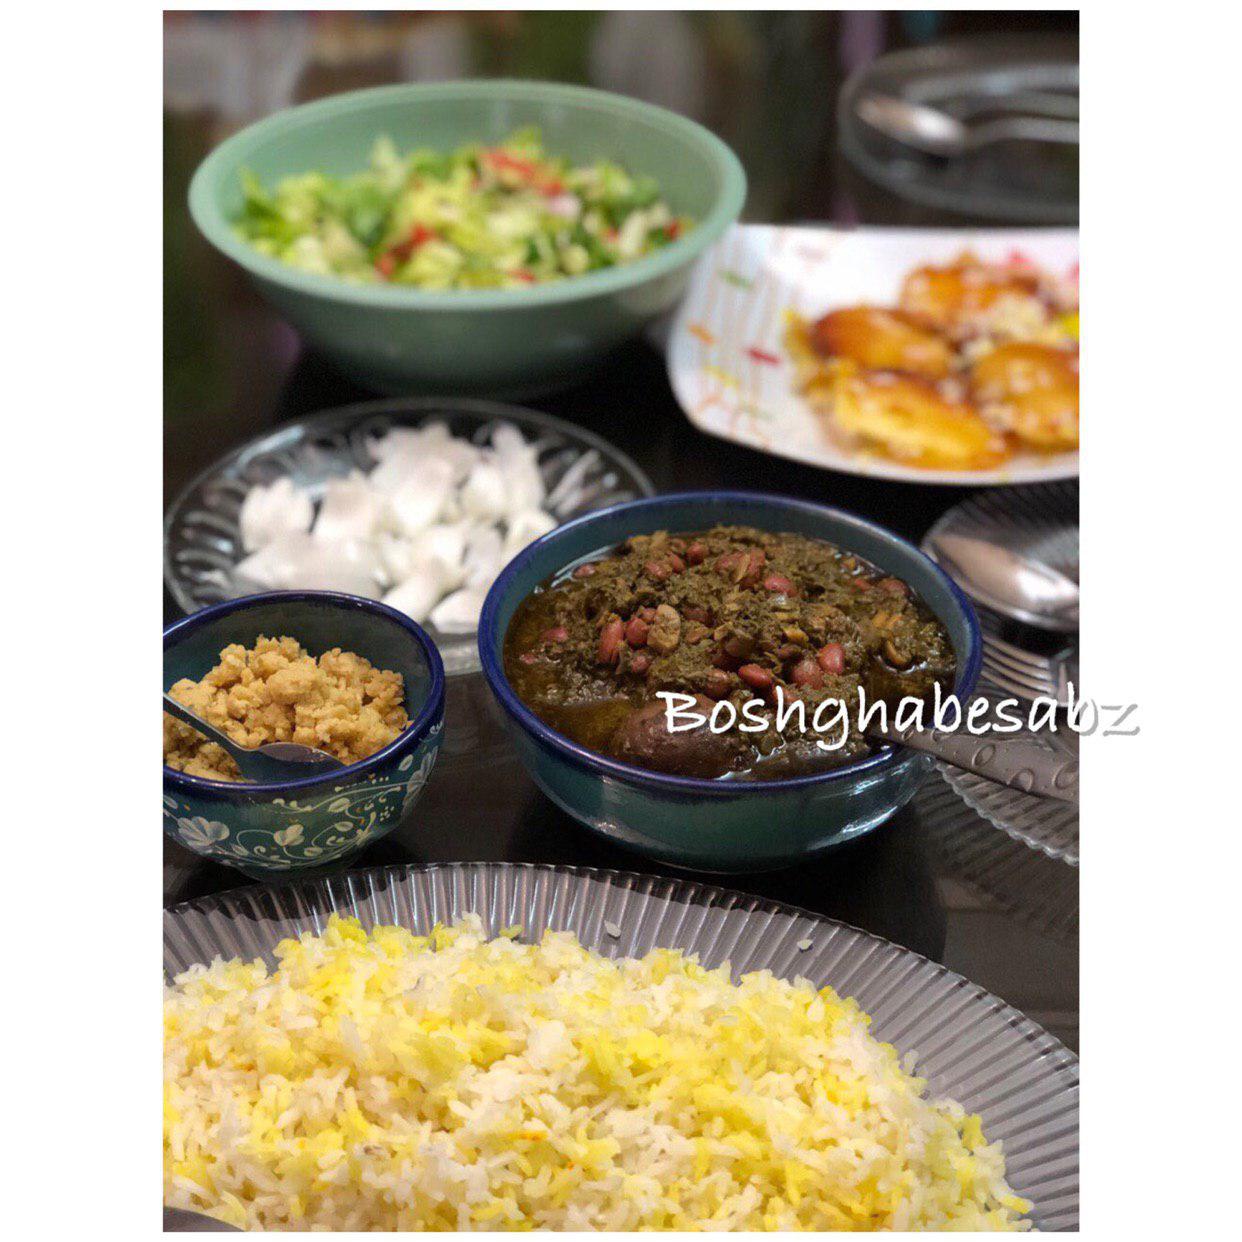 خورشت-سبزی-گیاهی-وگان-khoresht-sabzi-vegetarian-vegan-iranian-food